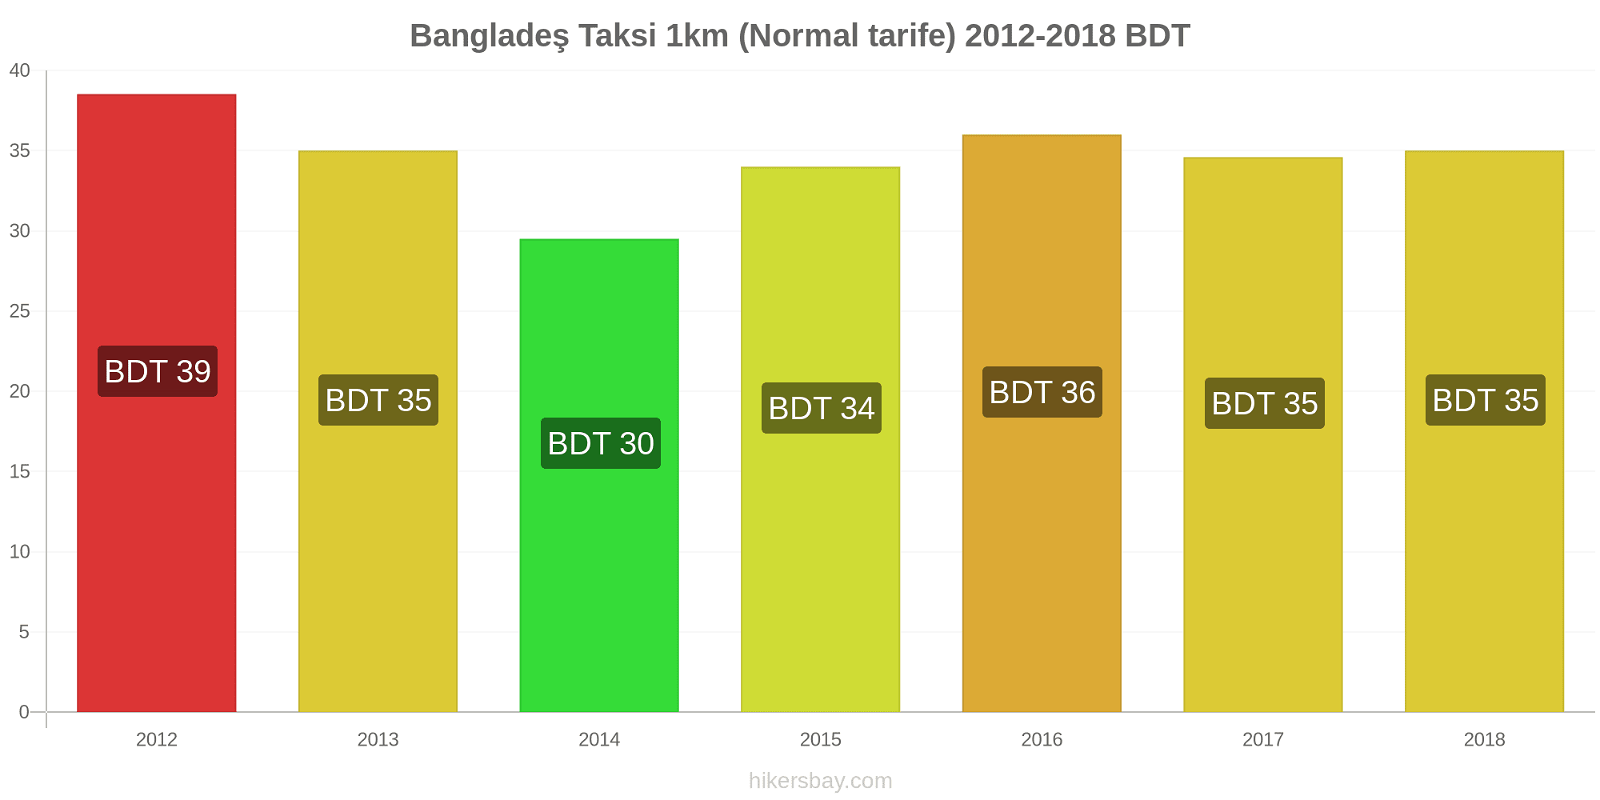 Bangladeş fiyat değişiklikleri Taksi 1km (Normal tarife) hikersbay.com